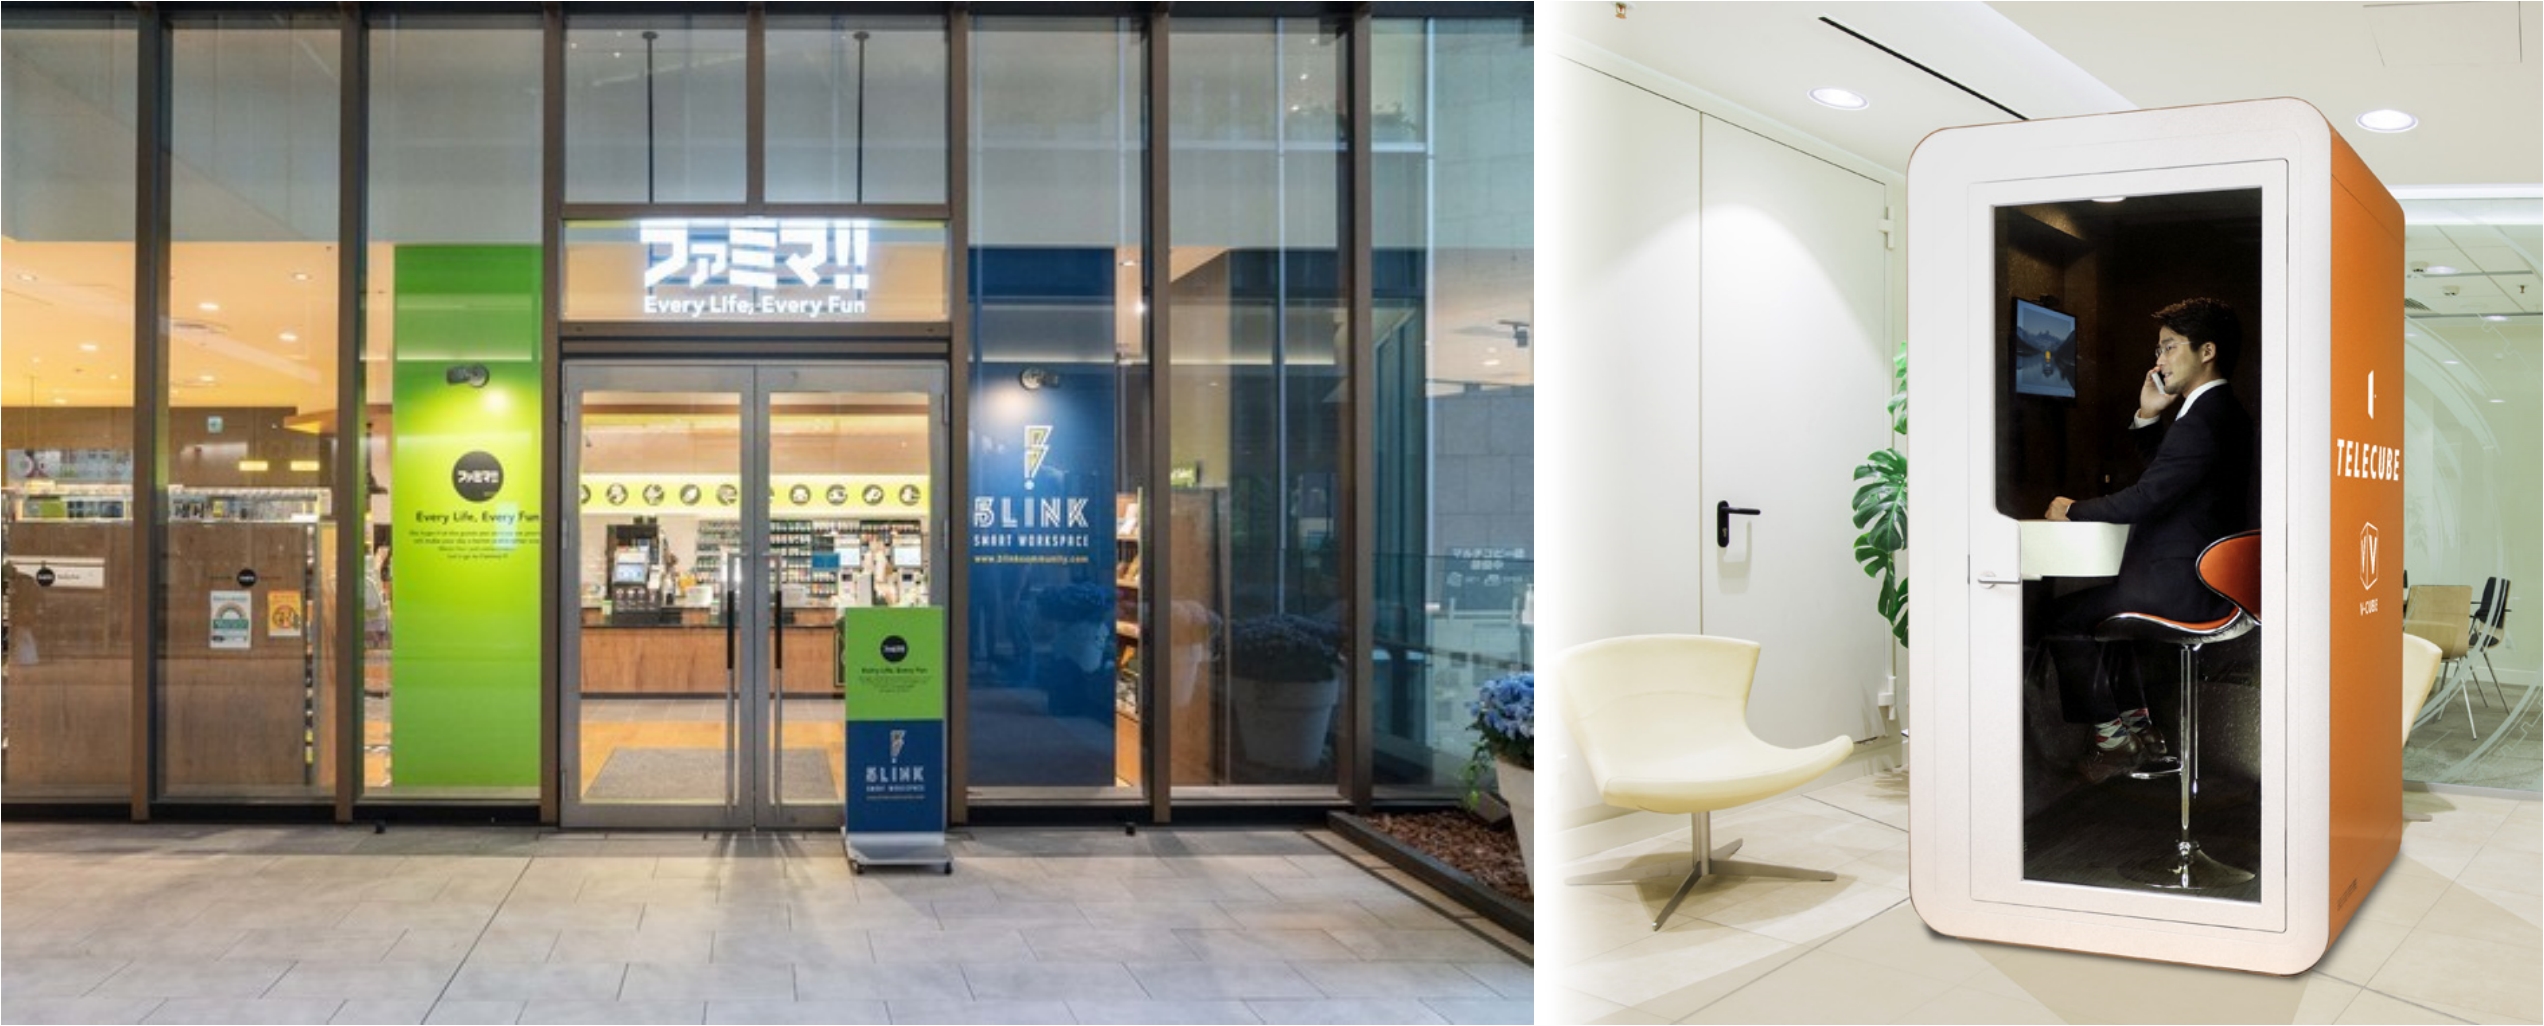 (左)지난 5월 도쿄 키오이쵸(紀尾井町) 패밀리마트에는 코워크 스페이스 업체 'BLINK'의 'BLINK SMART WORKSPACE'가 오픈했어요. (右)세븐 일레븐 역시 '세븐 큐브'란 이름으로 편의점을 공유 스페이스로 개방해요.